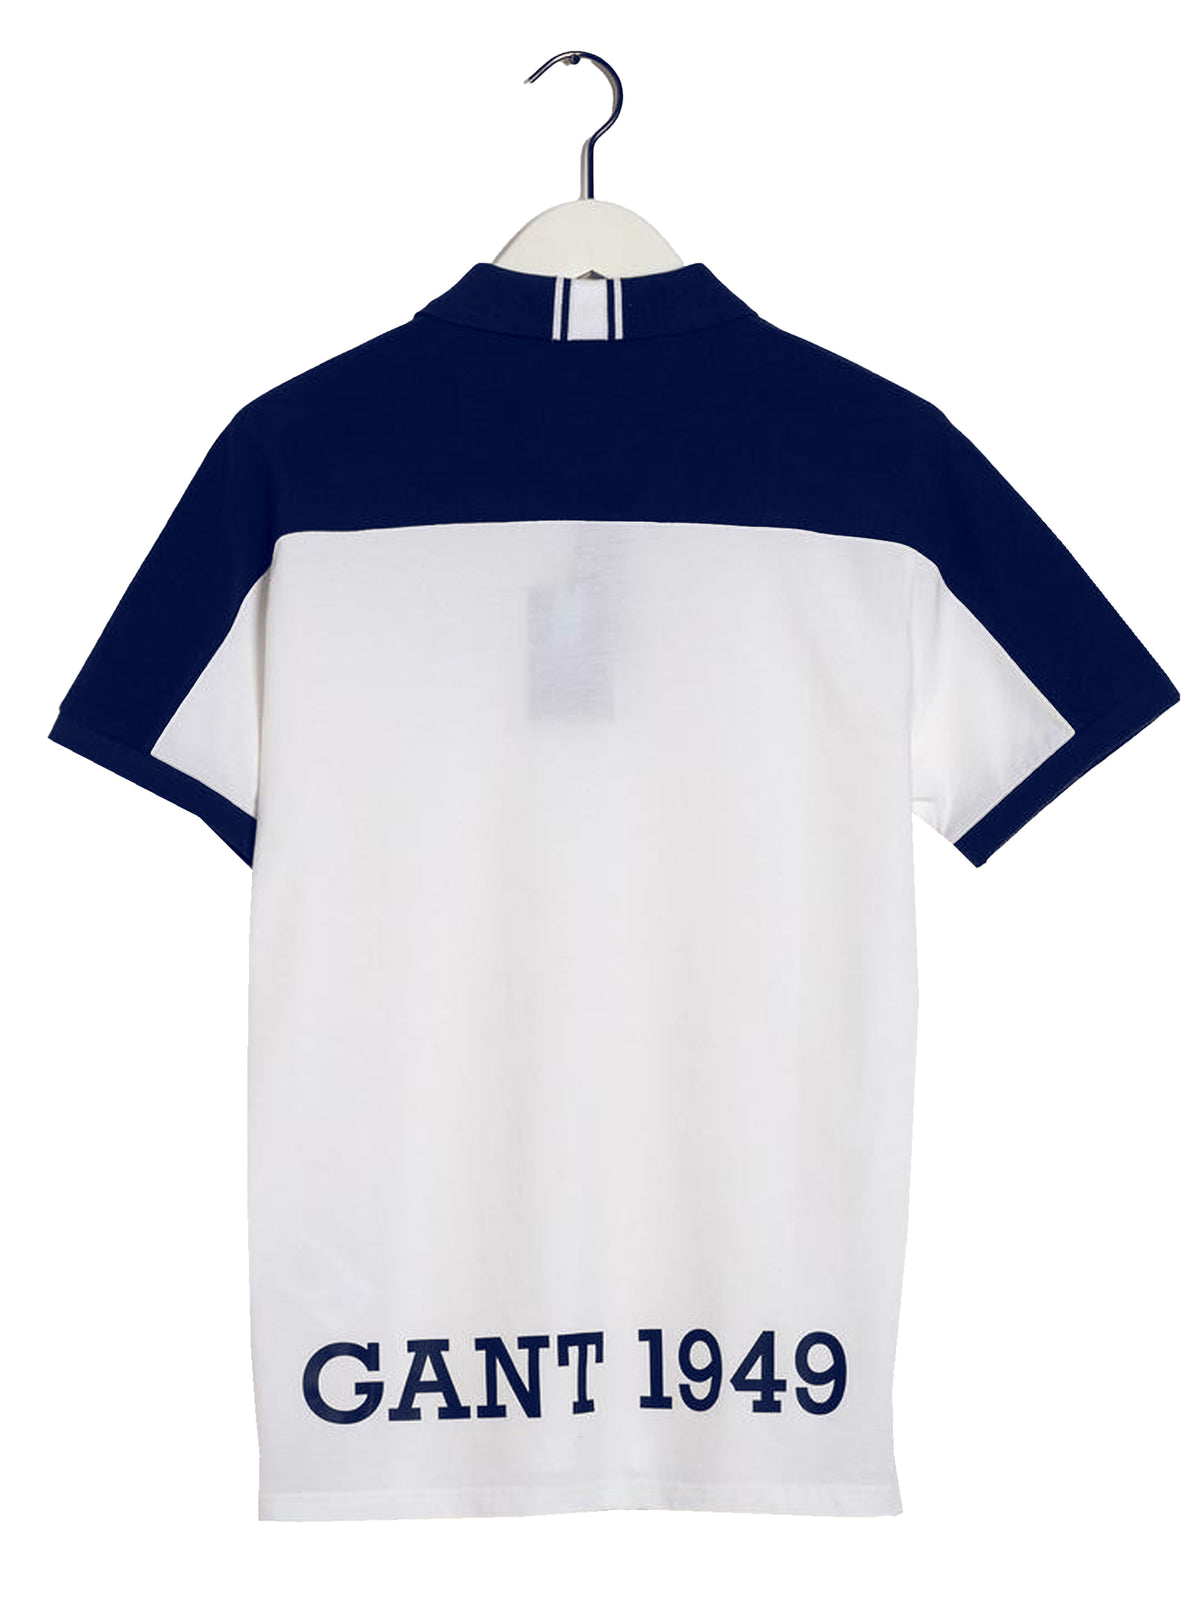 GANT_POLO_NAUTIC Gant | Mens Nautical Polo Shirt GANT RAWDENIM